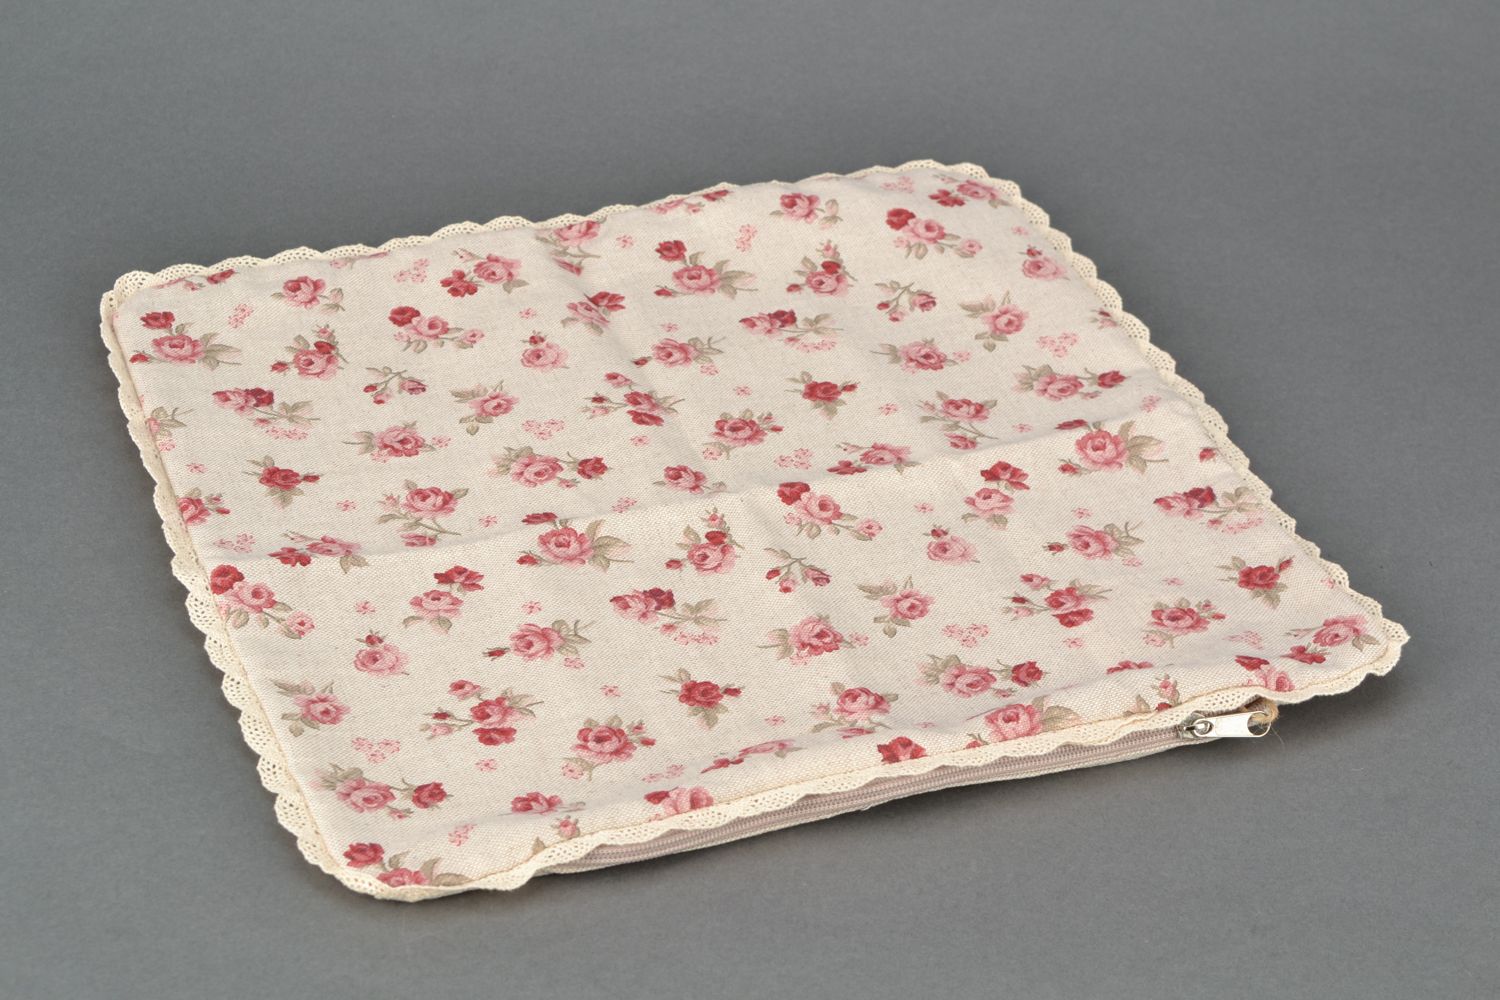 Petite taie d'oreiller motif fleurs en coton et polyamide faite main Rose rouge photo 1